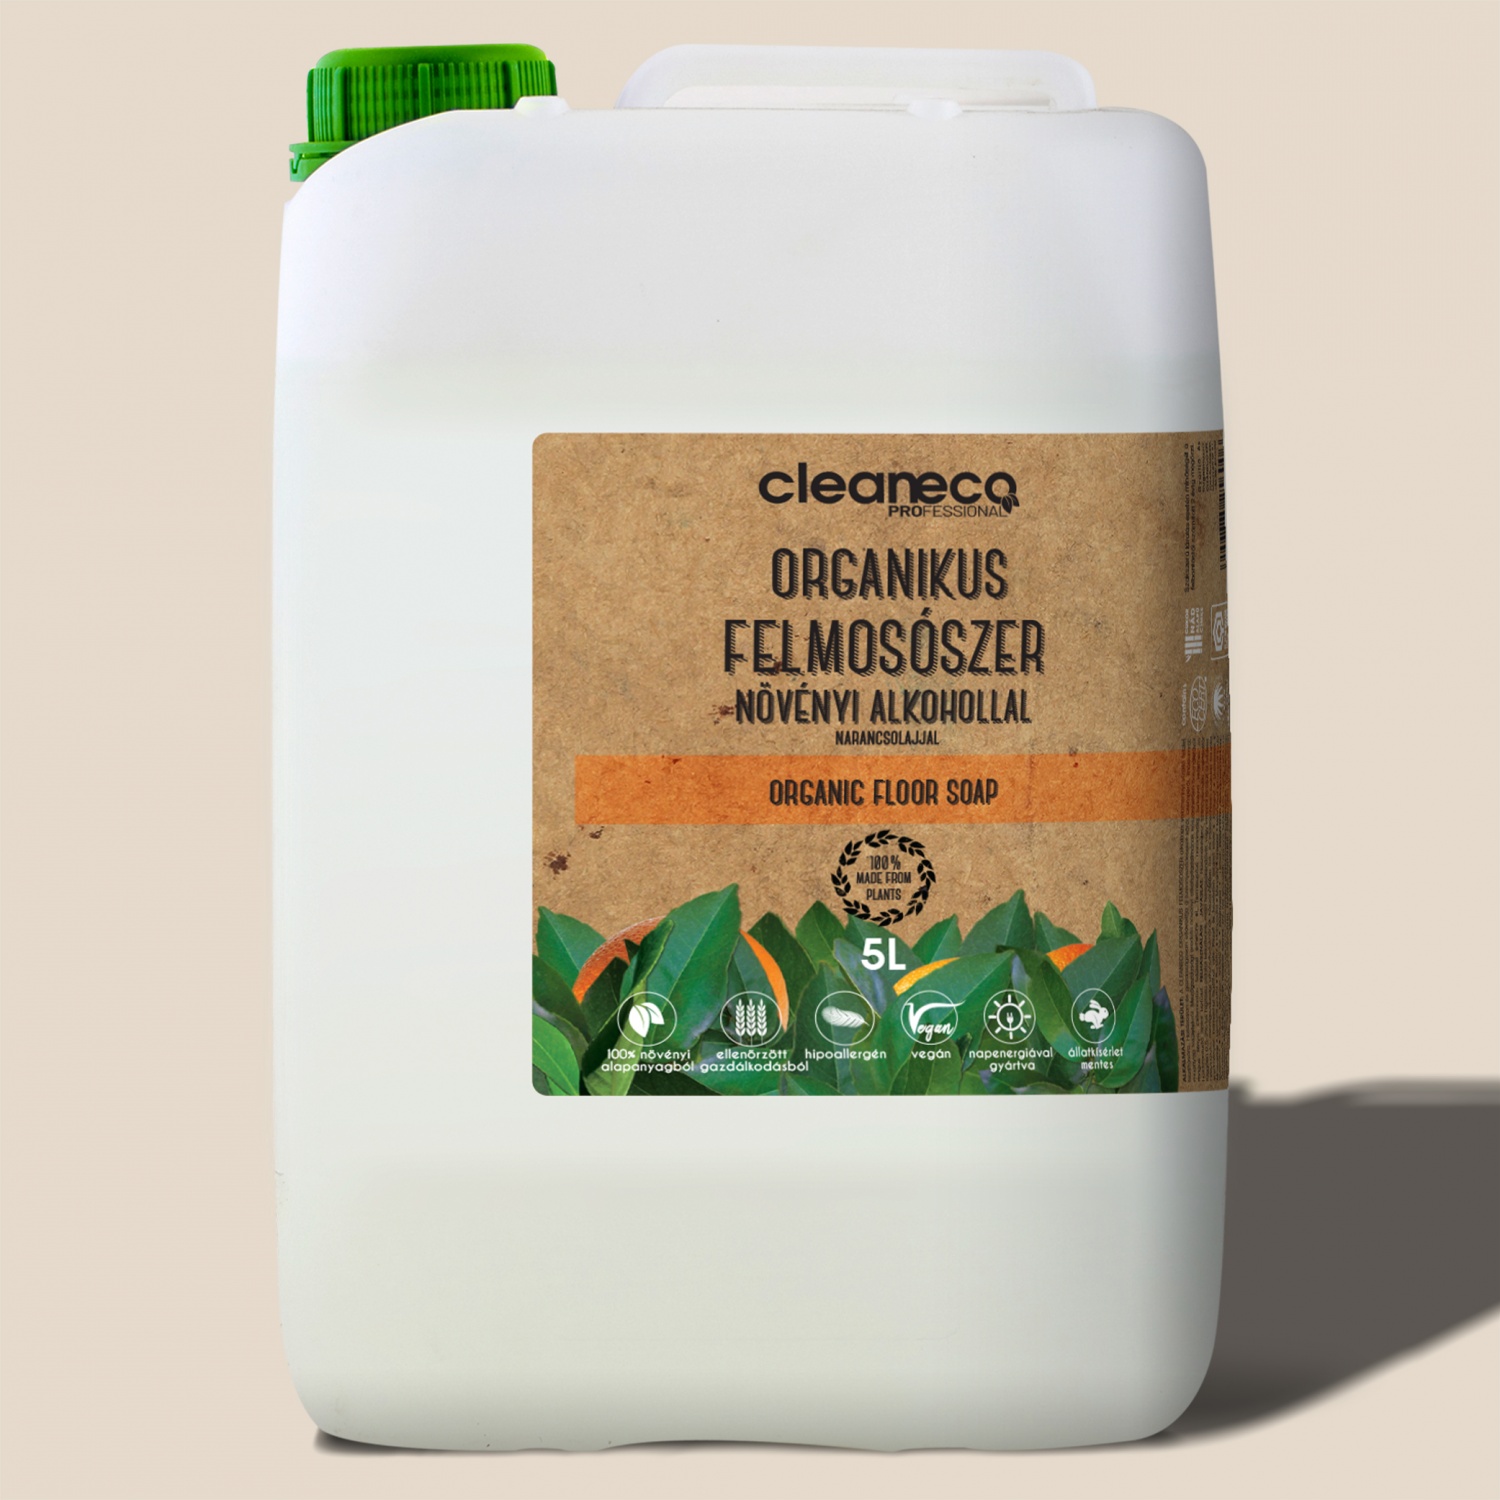 Cleaneco Organikus felmosószer, Narancsolajjal, XXL, 5liter